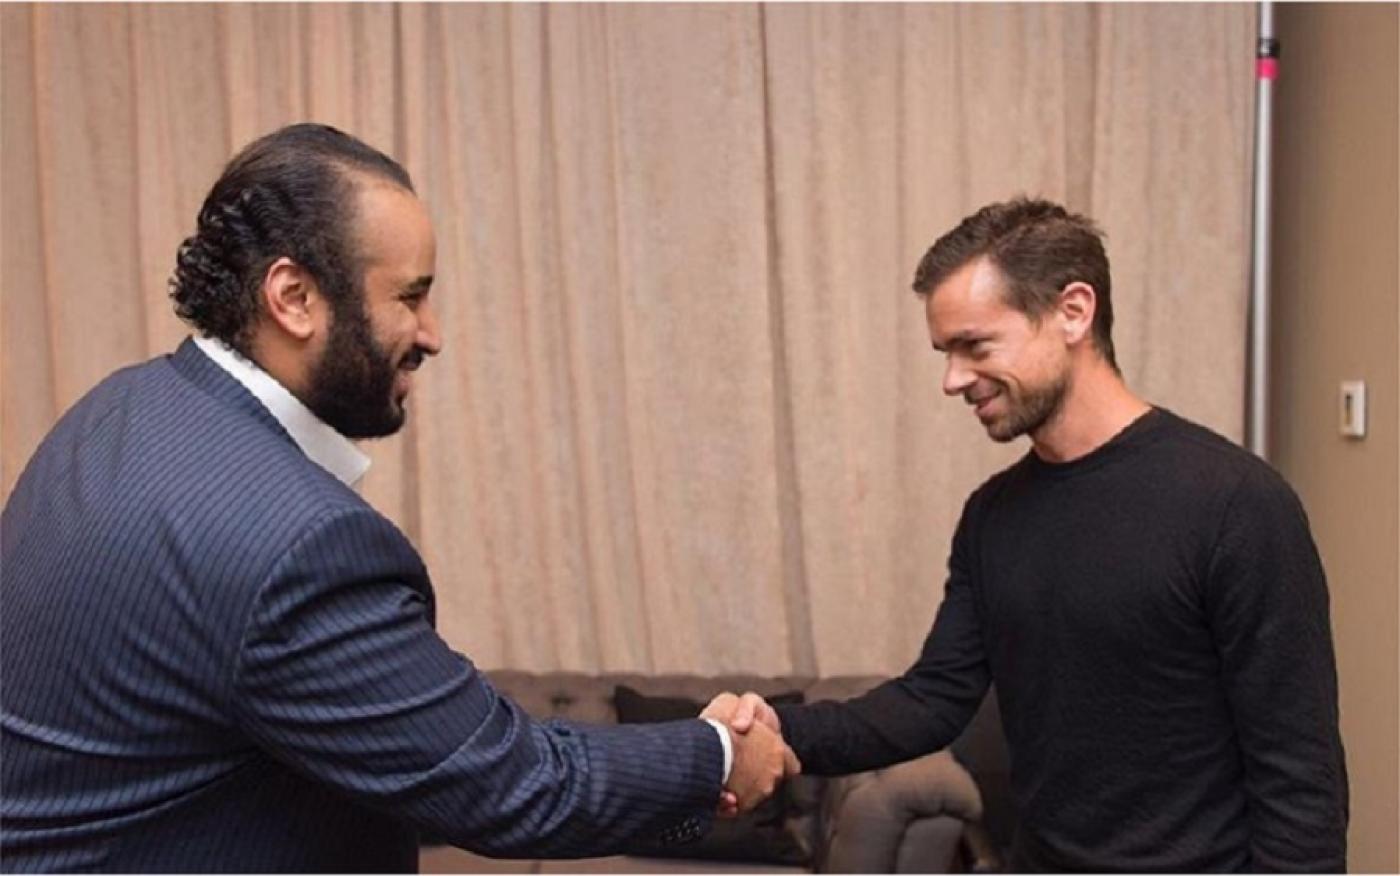 Jack Dorsey, PDG de Twitter, et Mohammed ben Salmane, prince héritier saoudien, se serrent la main sur une photo publiée par Bader al-Asaker en juin 2016 (Instagram)